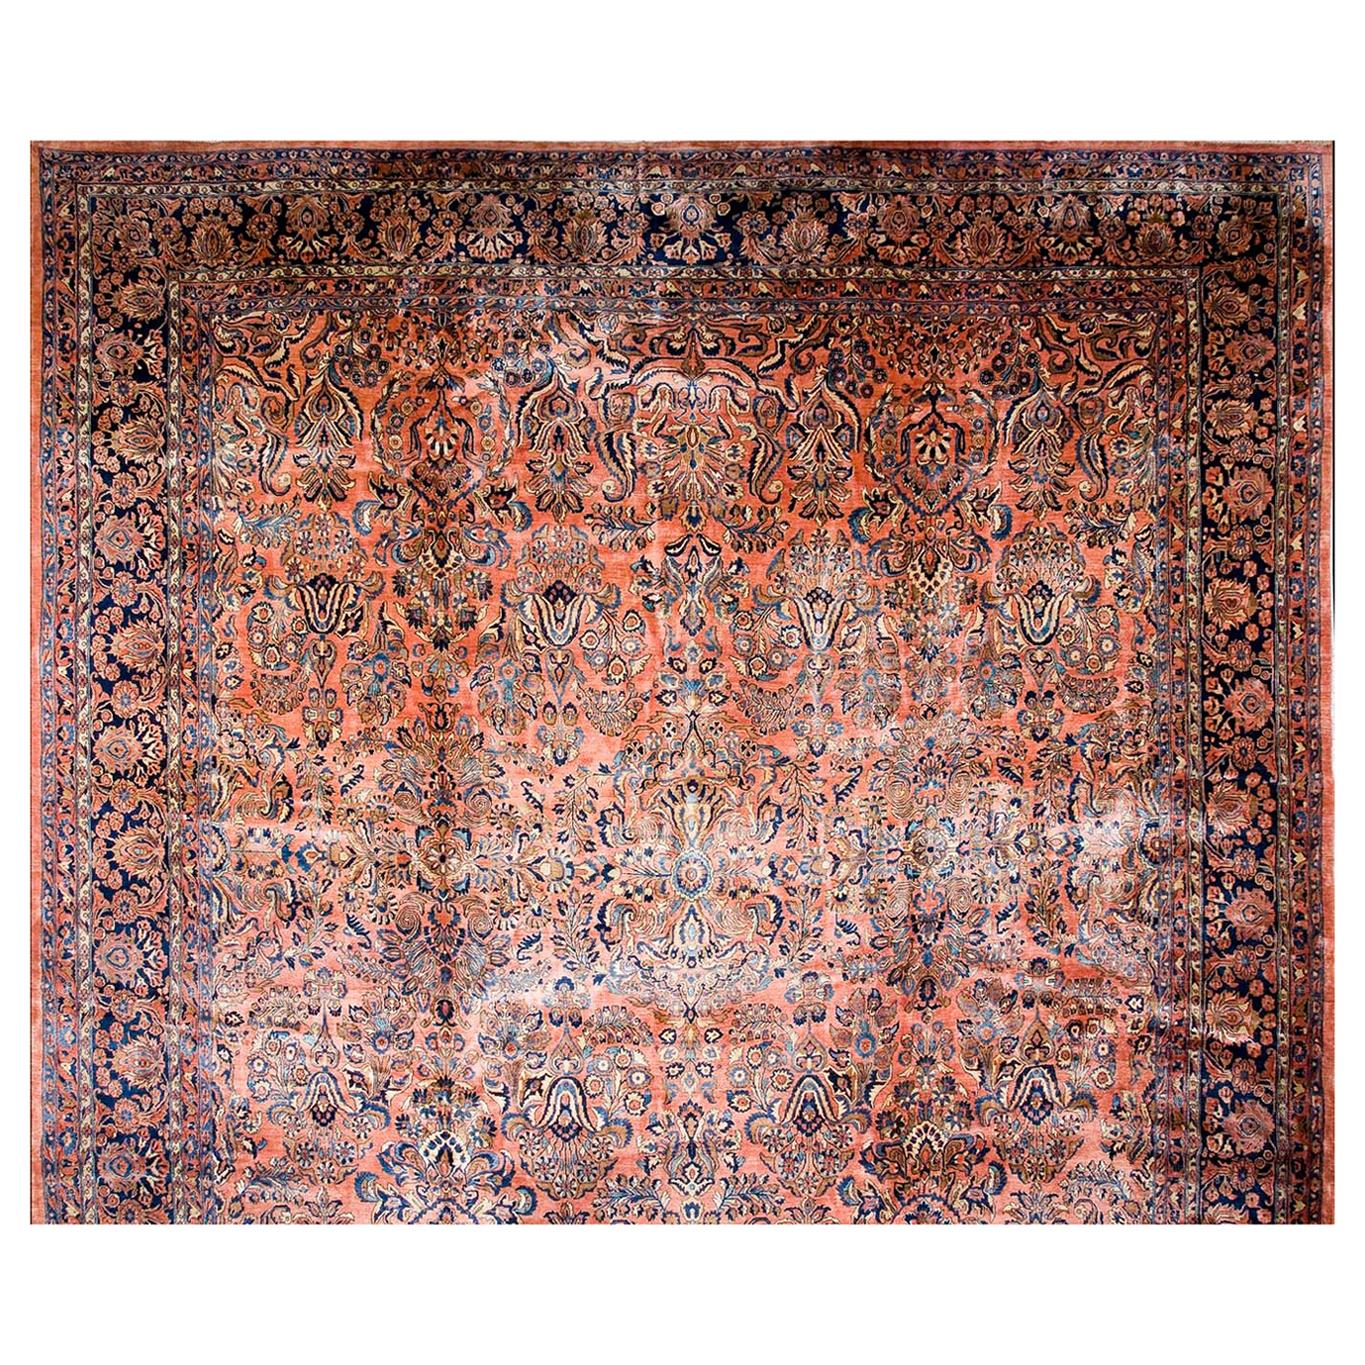 1920 Persian Sarouk Carpet ( 16'2" x 31'2 - 493 x 950 )